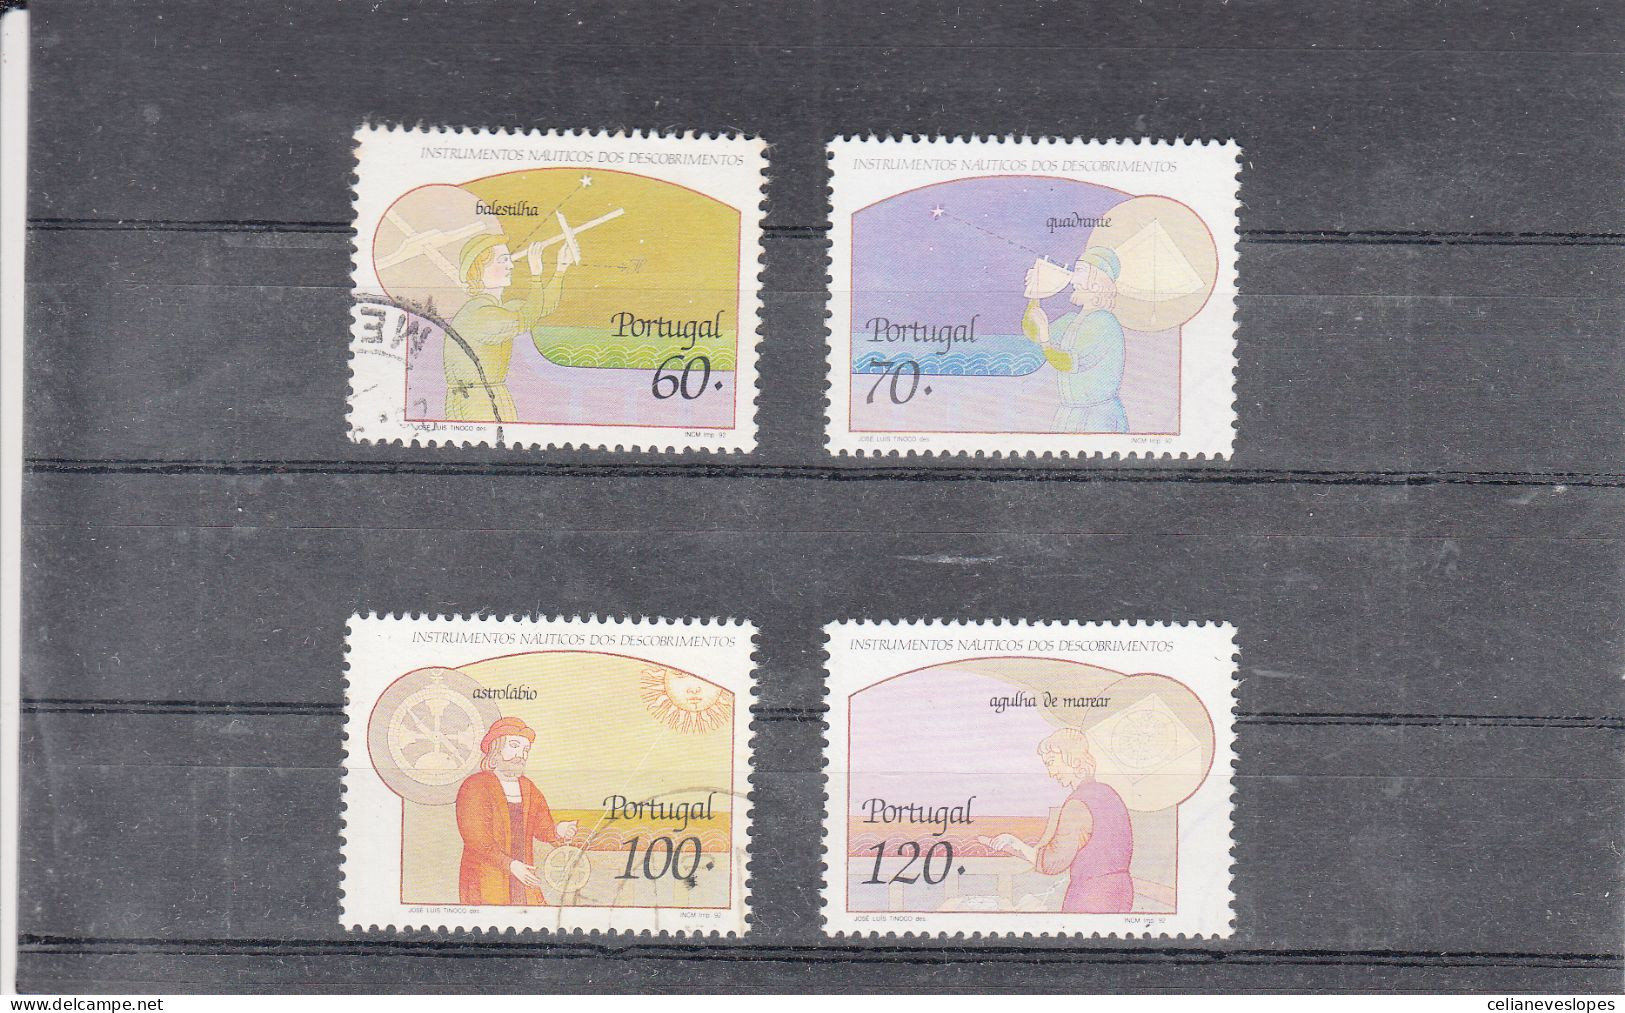 Portugal, Instrumentos Nauticos Dos Descobrimentos, 1992, Mundifil Nº 2074 A 2077 Used - Used Stamps